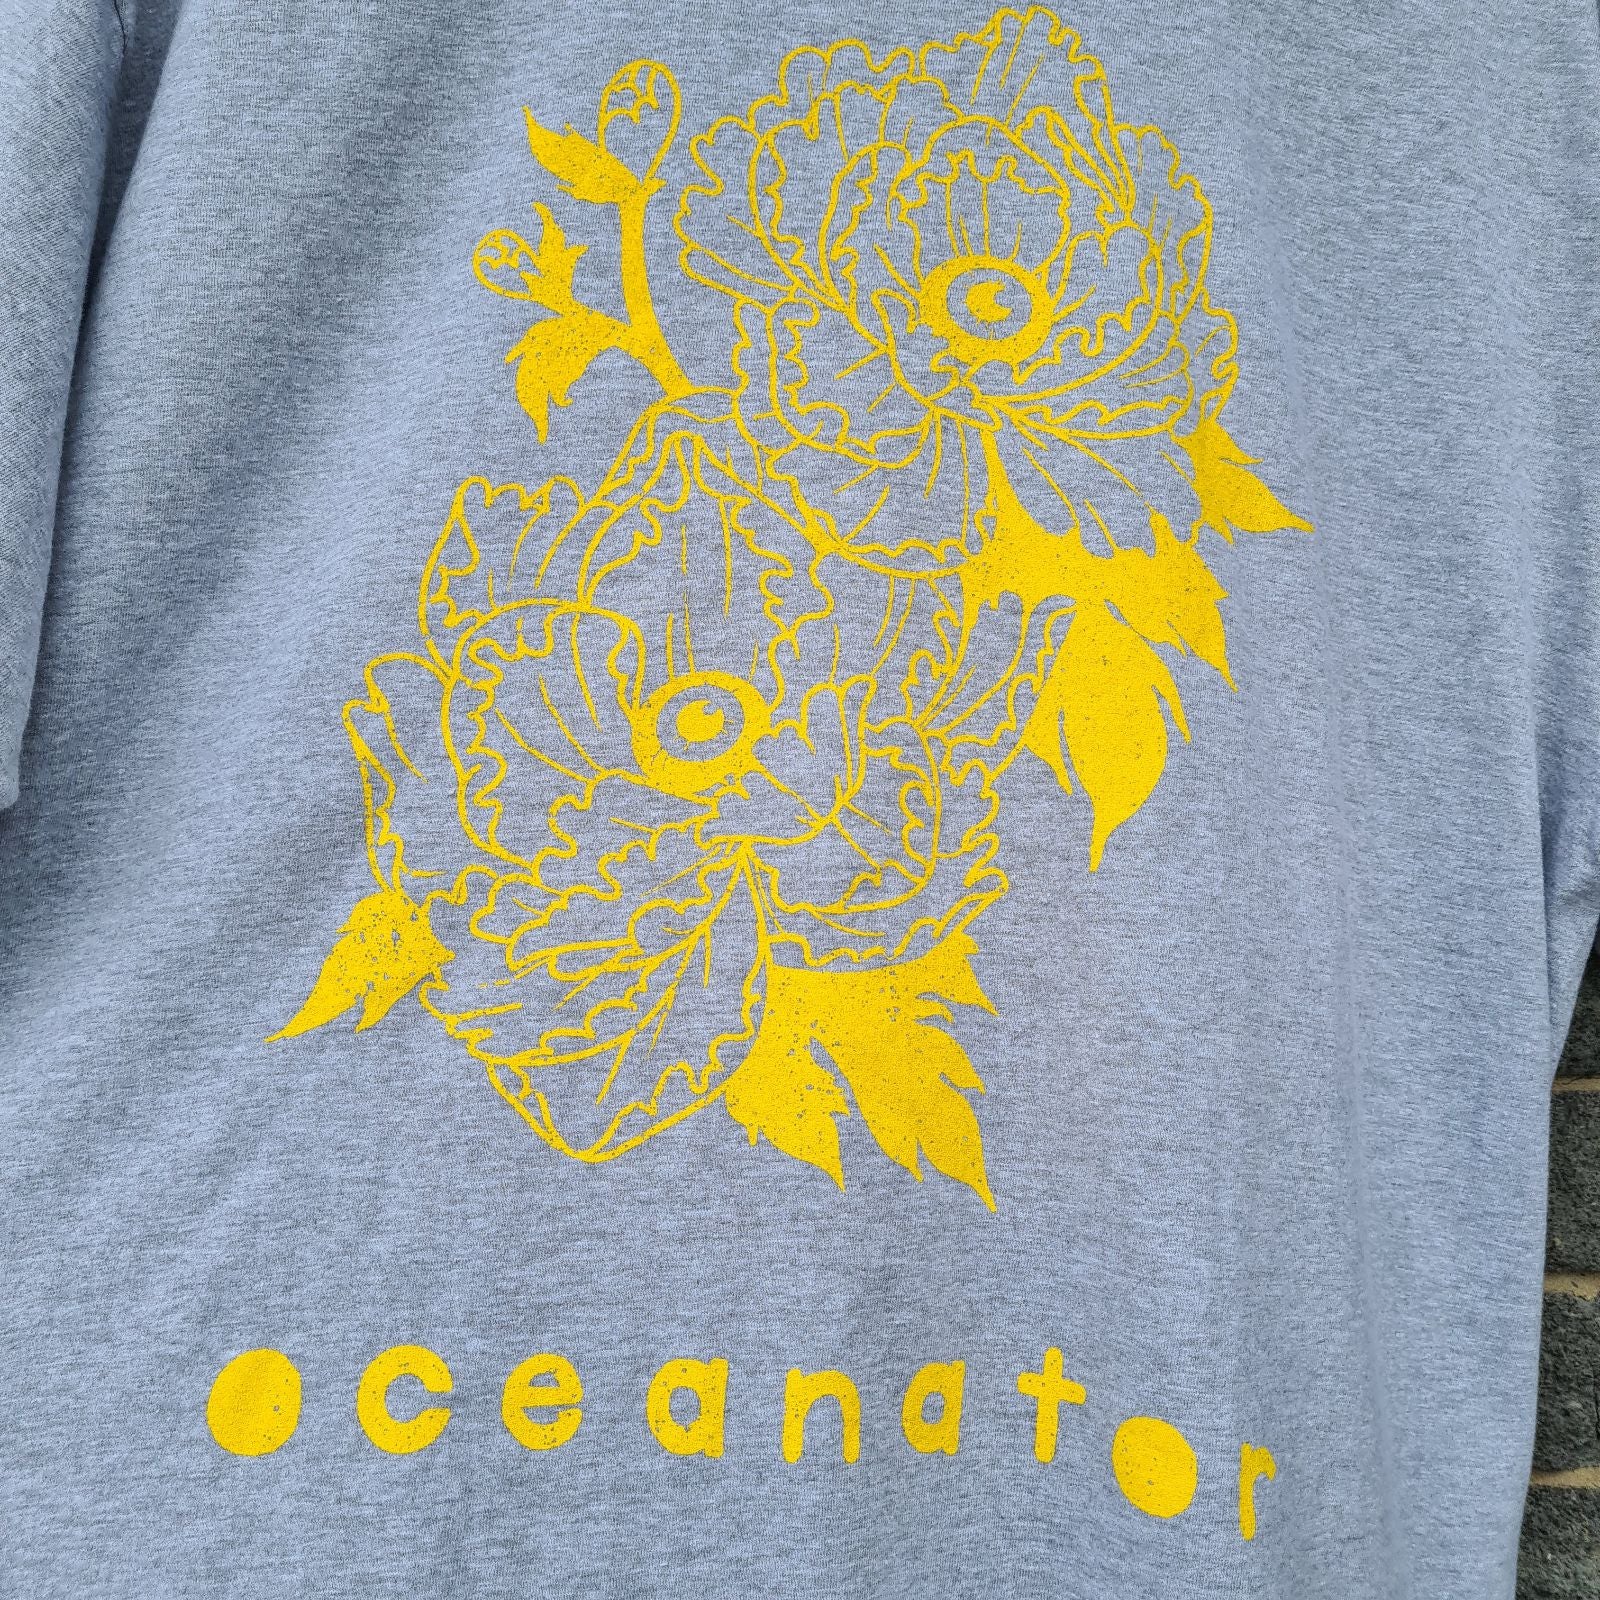 Oceanator Grey UK/EU Tour T-shirt